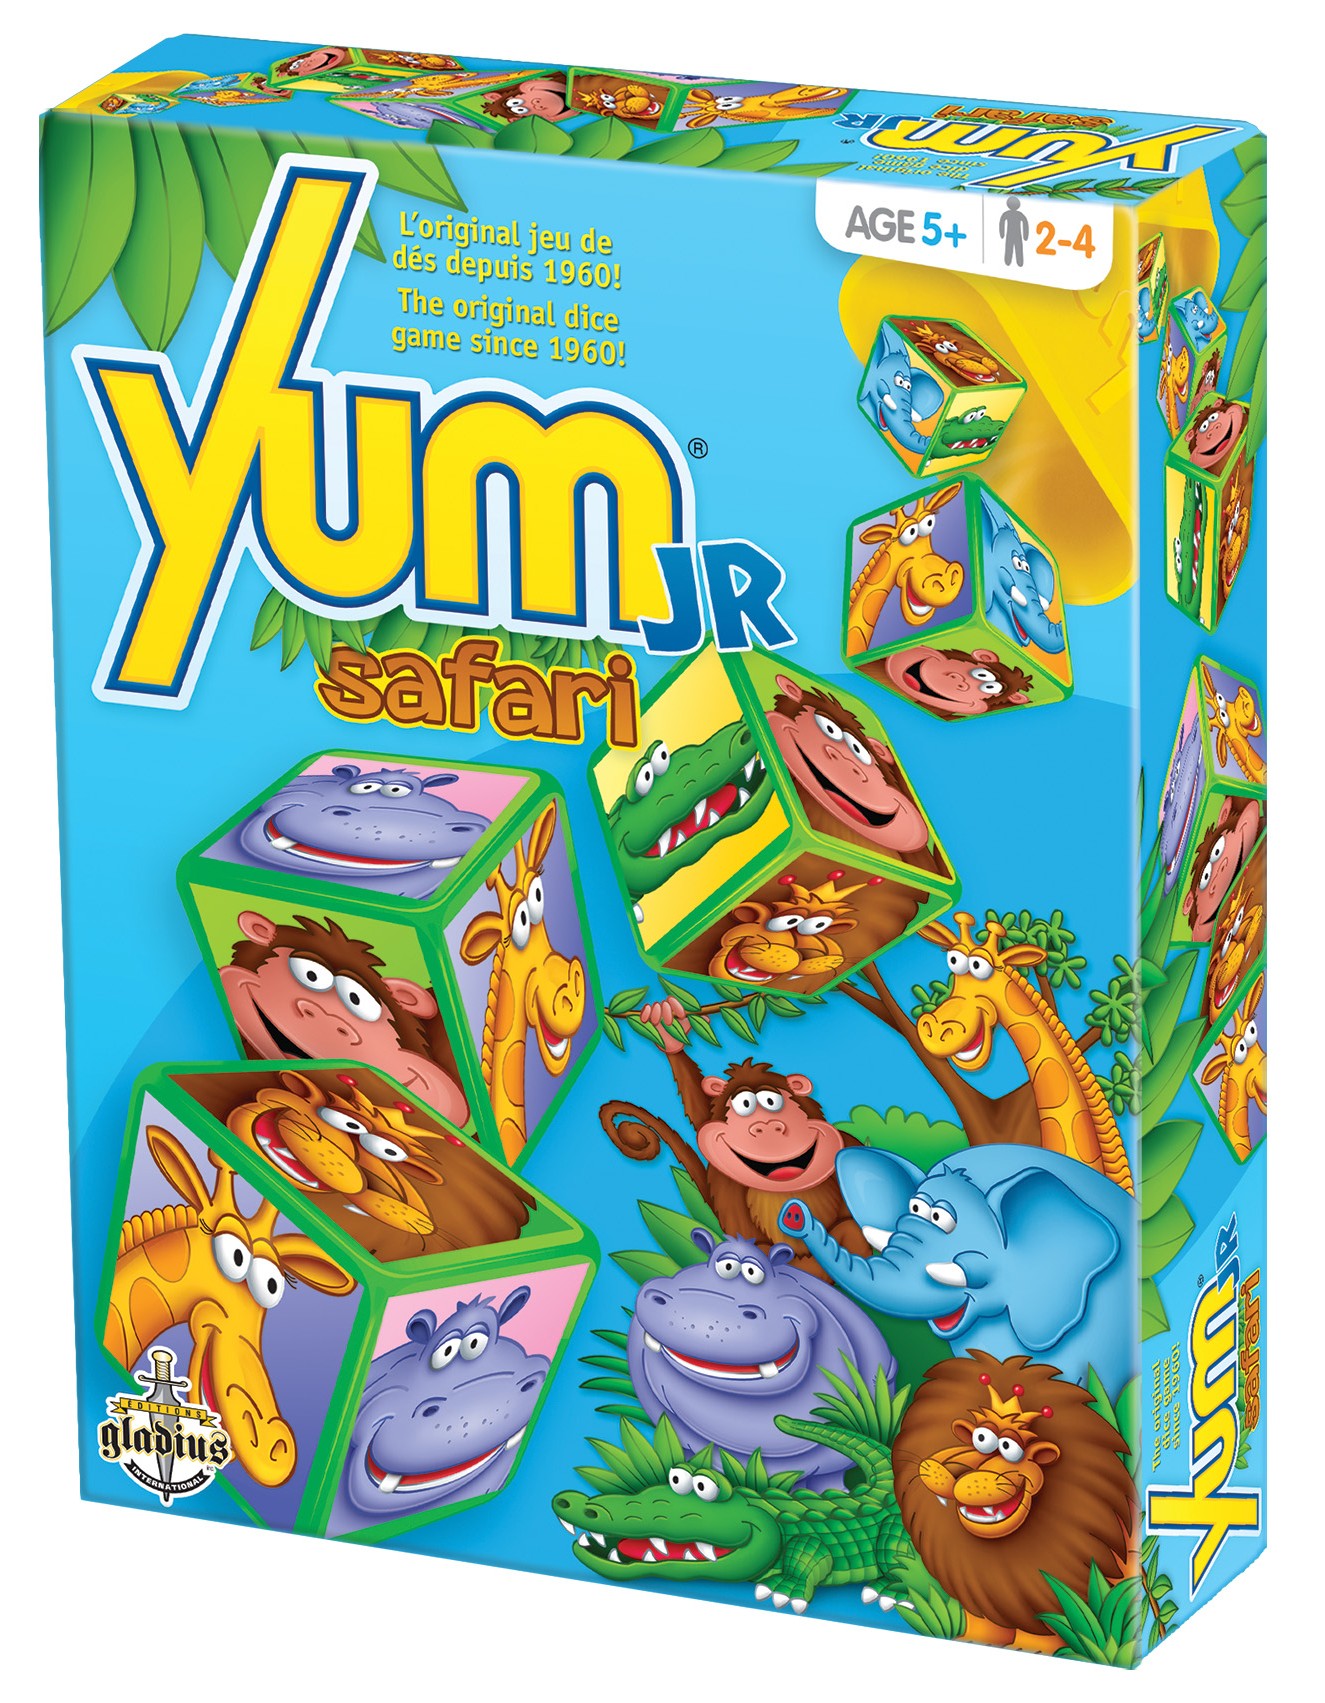 Boîte du jeu Yum Jr Safari